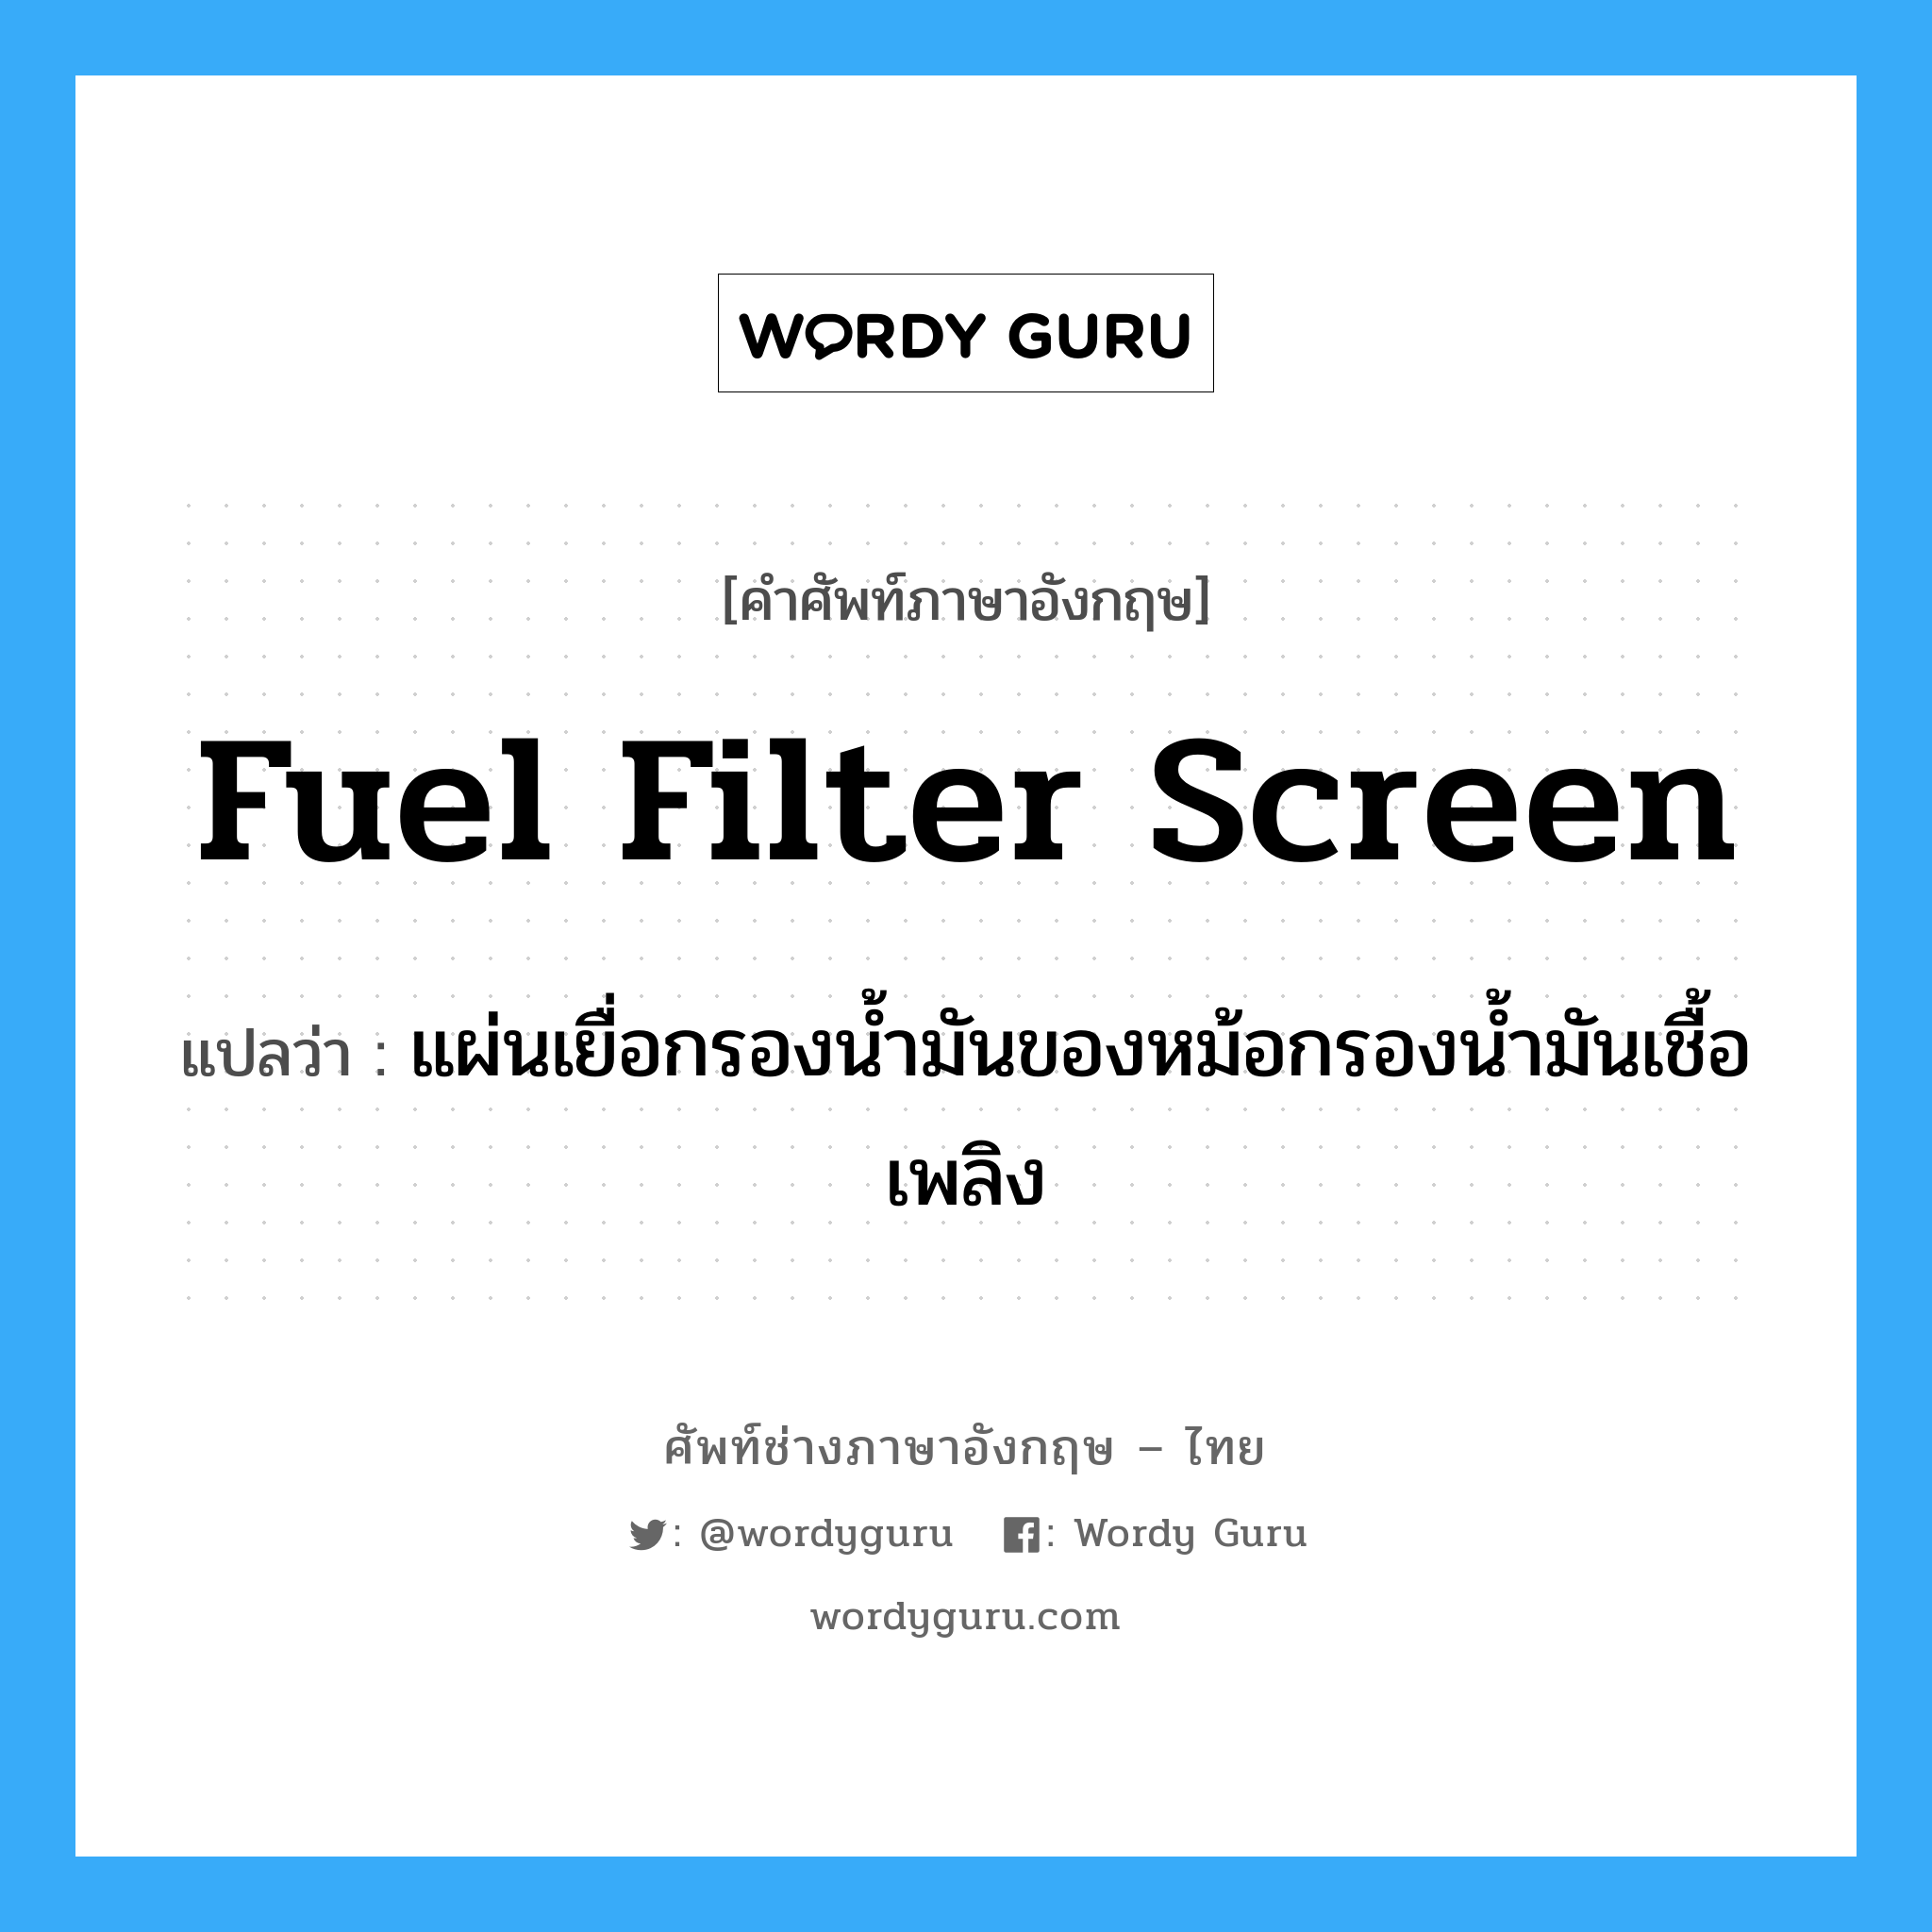 fuel filter screen แปลว่า?, คำศัพท์ช่างภาษาอังกฤษ - ไทย fuel filter screen คำศัพท์ภาษาอังกฤษ fuel filter screen แปลว่า แผ่นเยื่อกรองน้ำมันของหม้อกรองน้ำมันเชื้อเพลิง